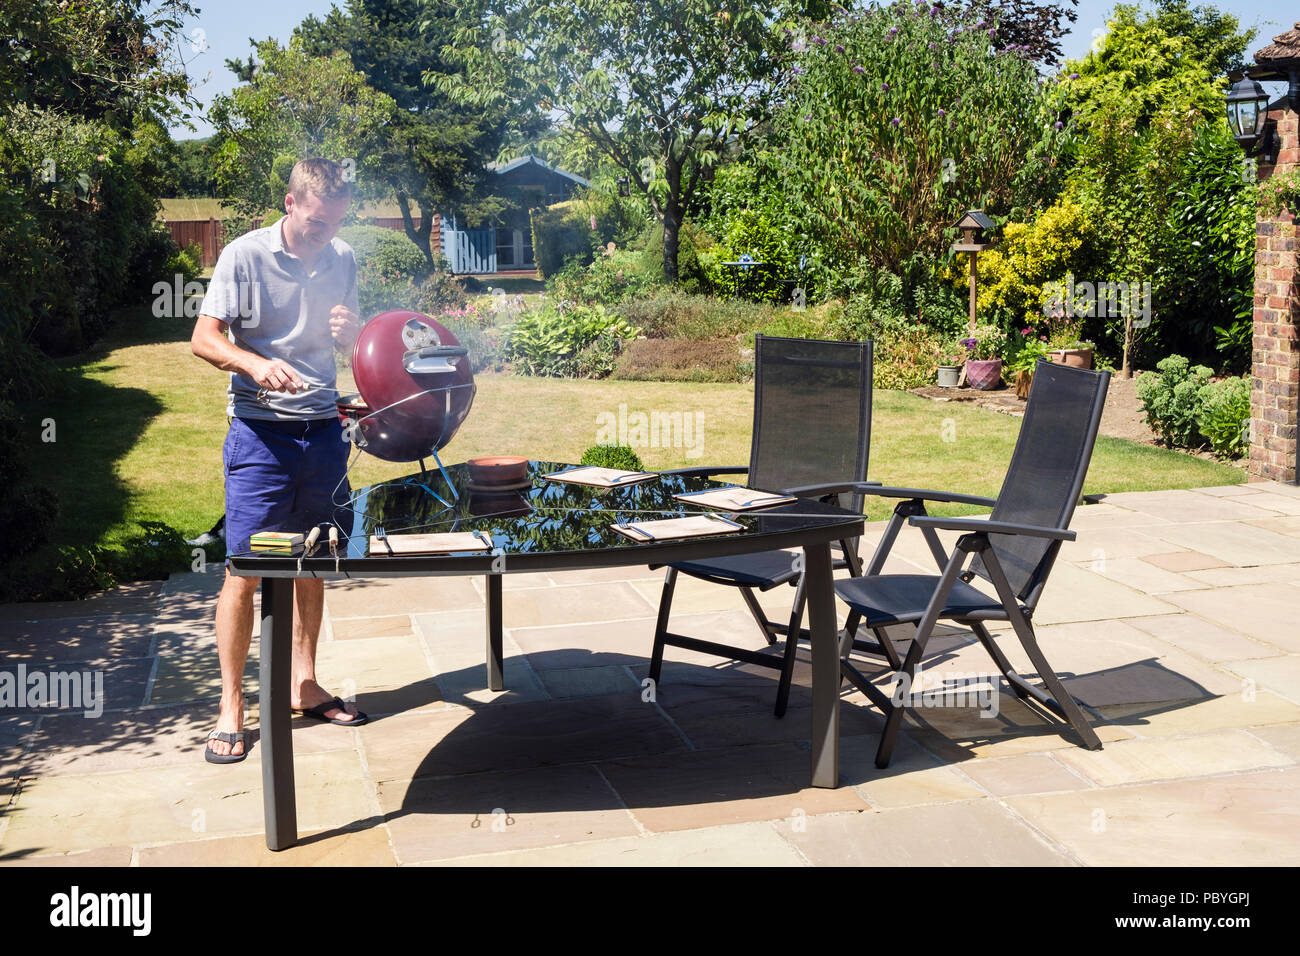 Authentisches Bild eines jungen Tausendjährigen Mannes kocht im heißen Sommer 2018 auf einem Grillplatz auf einem heimischen Gartentisch im Hinterhof auf einer Terrasse. England, Großbritannien, Großbritannien Stockfoto